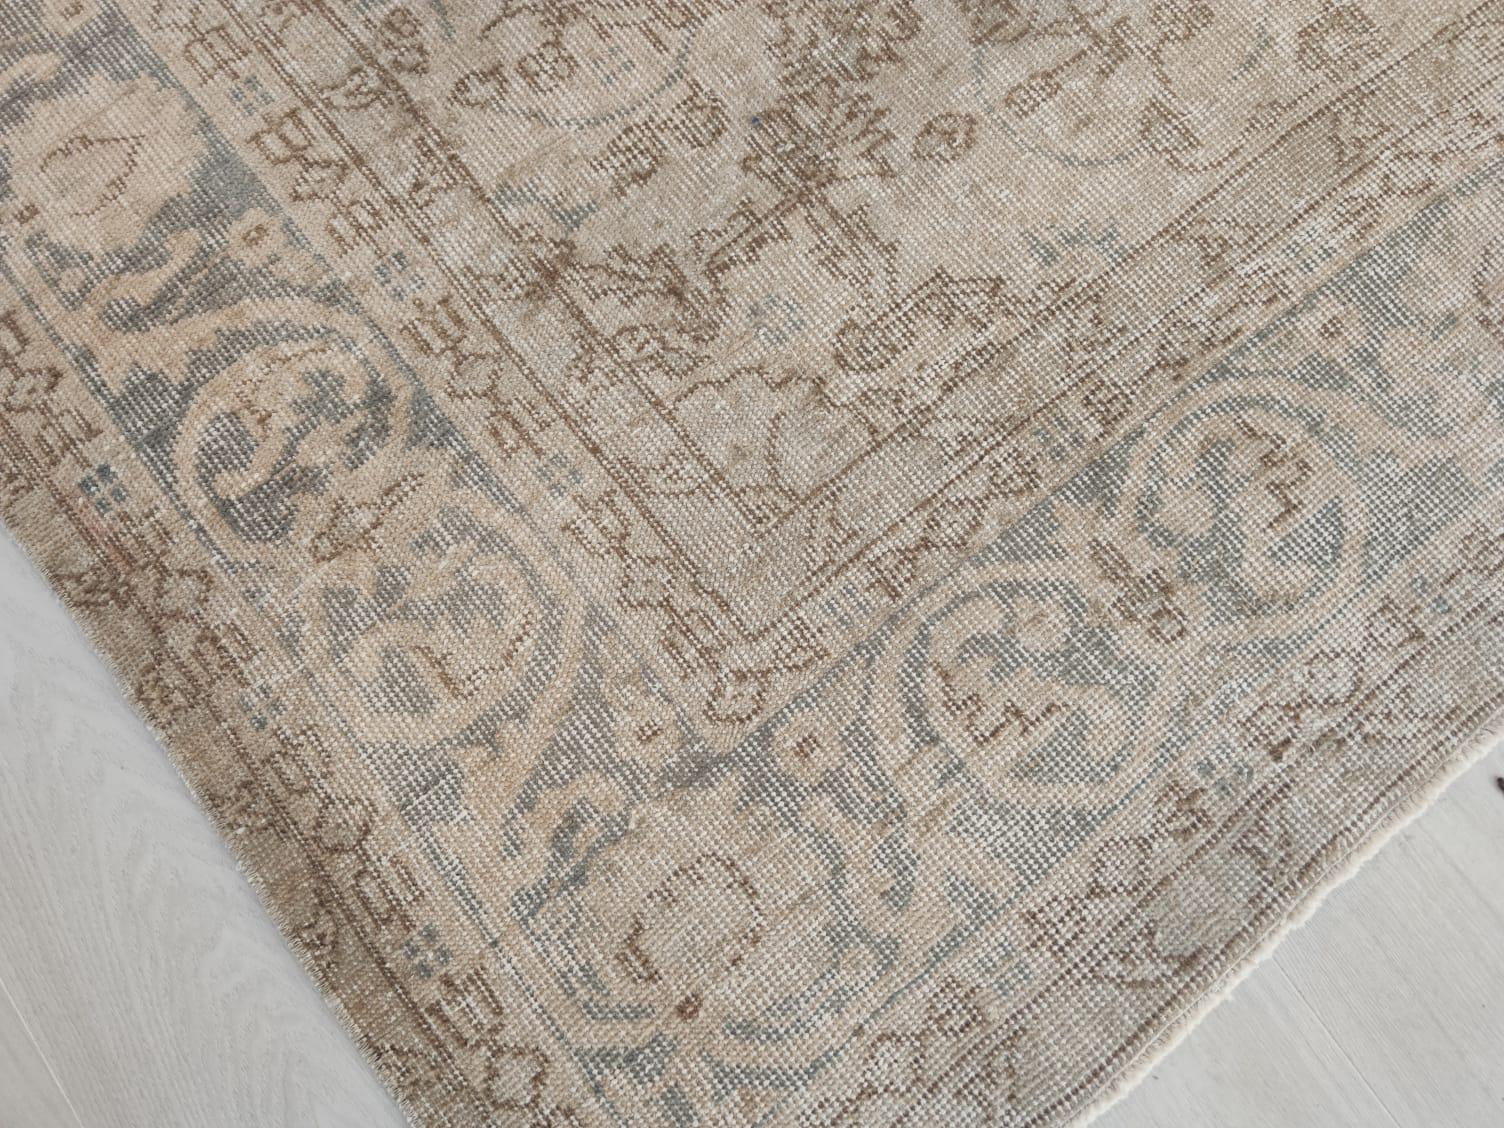 Oushak 7.2x10.8 ft Vintage Medallion Design Rug. Neutral Colors, Handmade Large Carpet For Sale